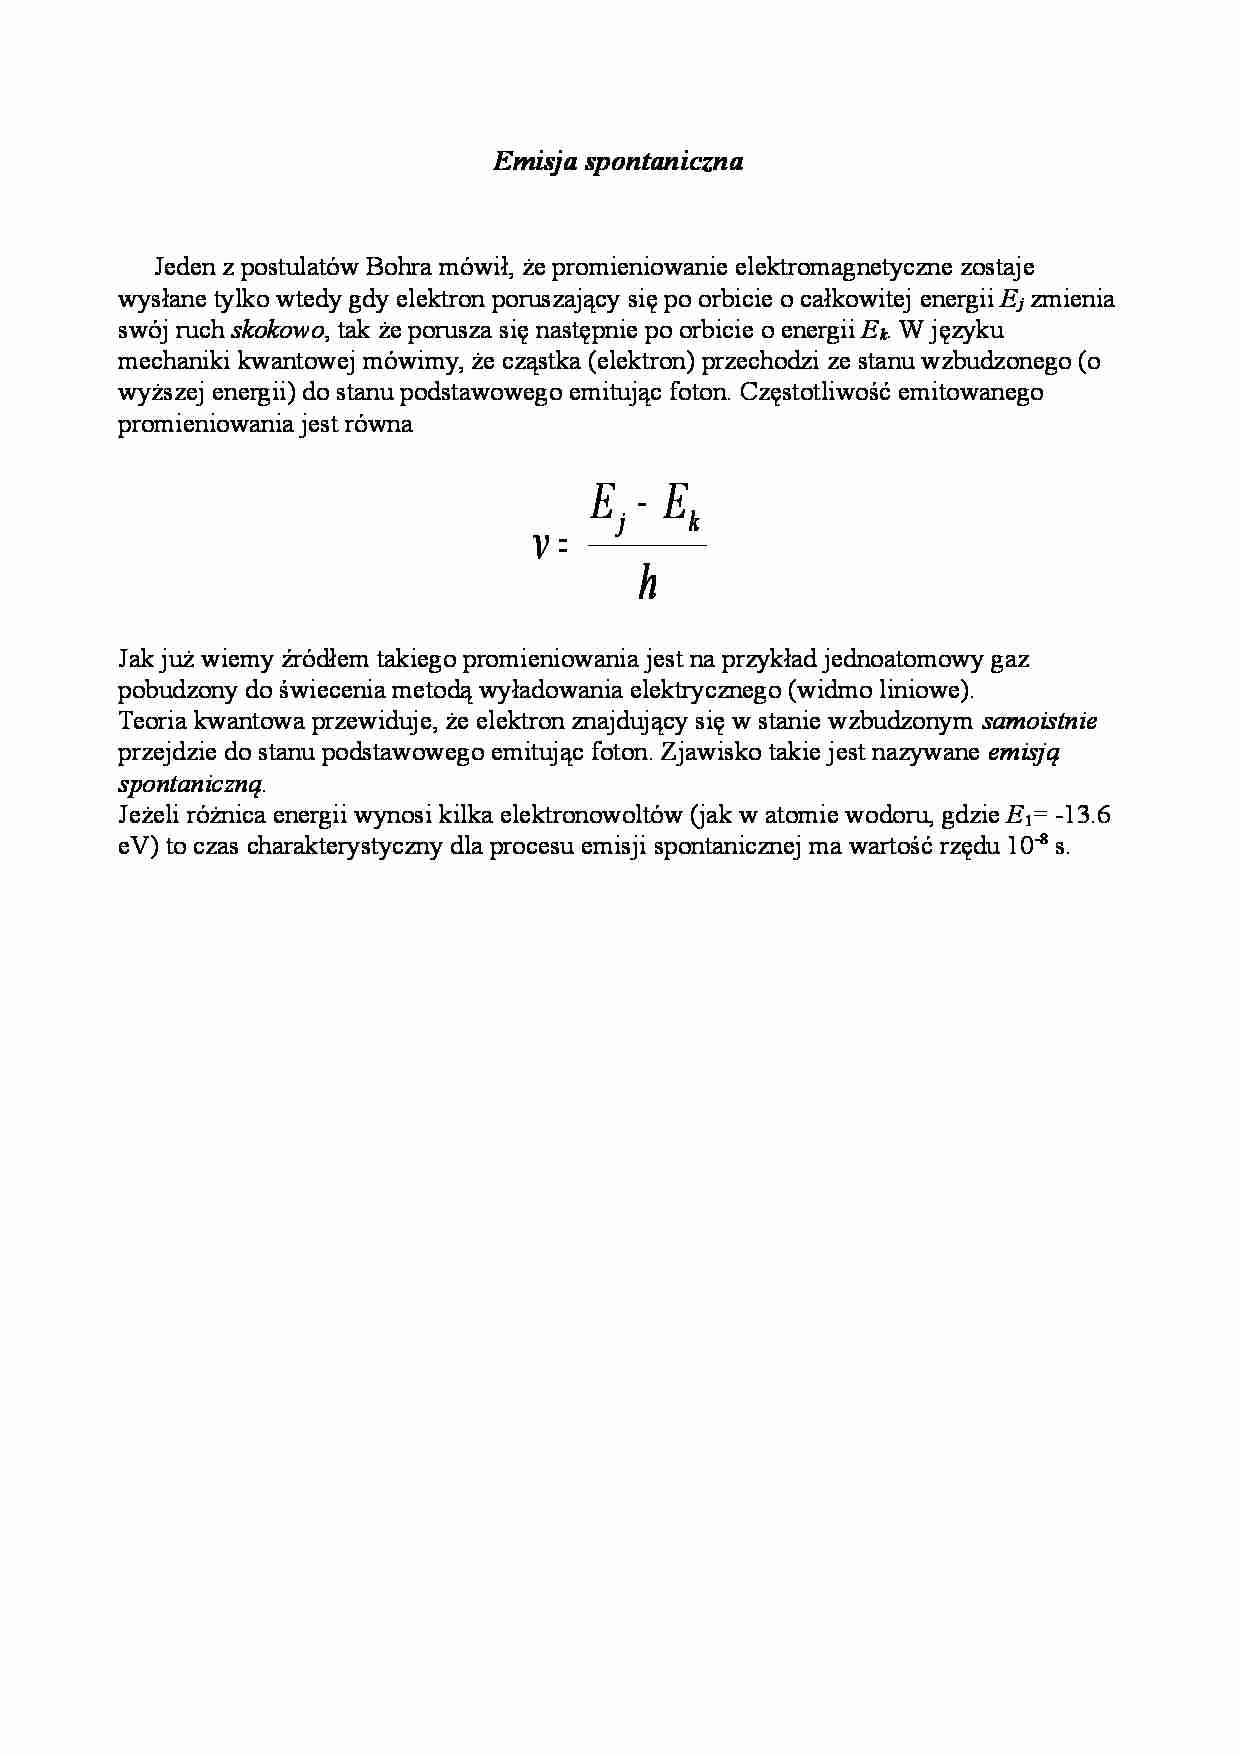 Fizyka - emisja spontaniczna - strona 1